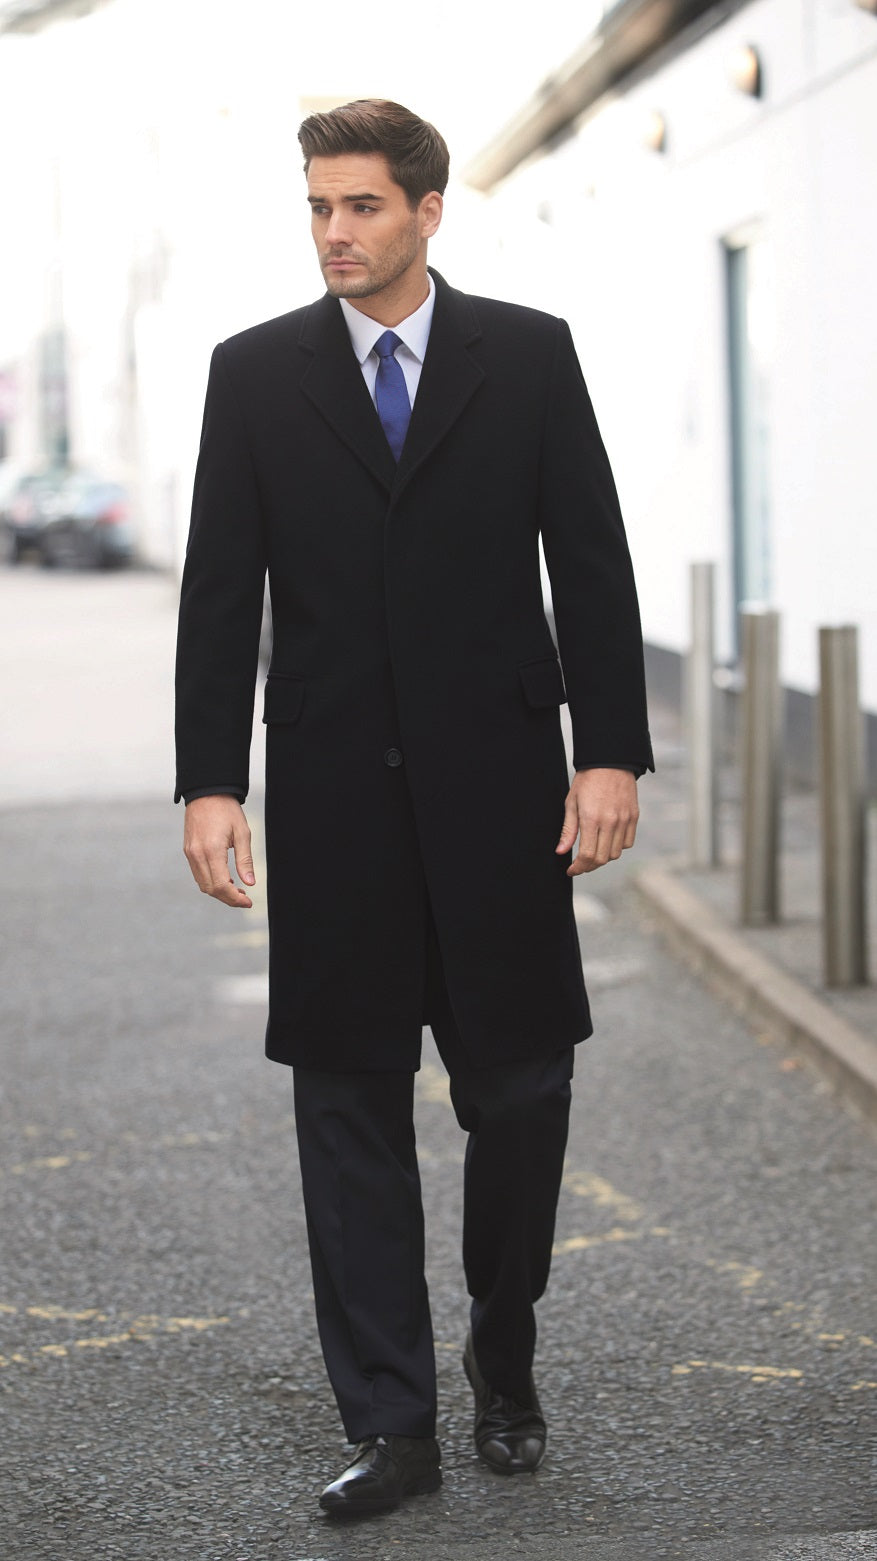 Men's Bond Black Overcoat - Fashion for Work